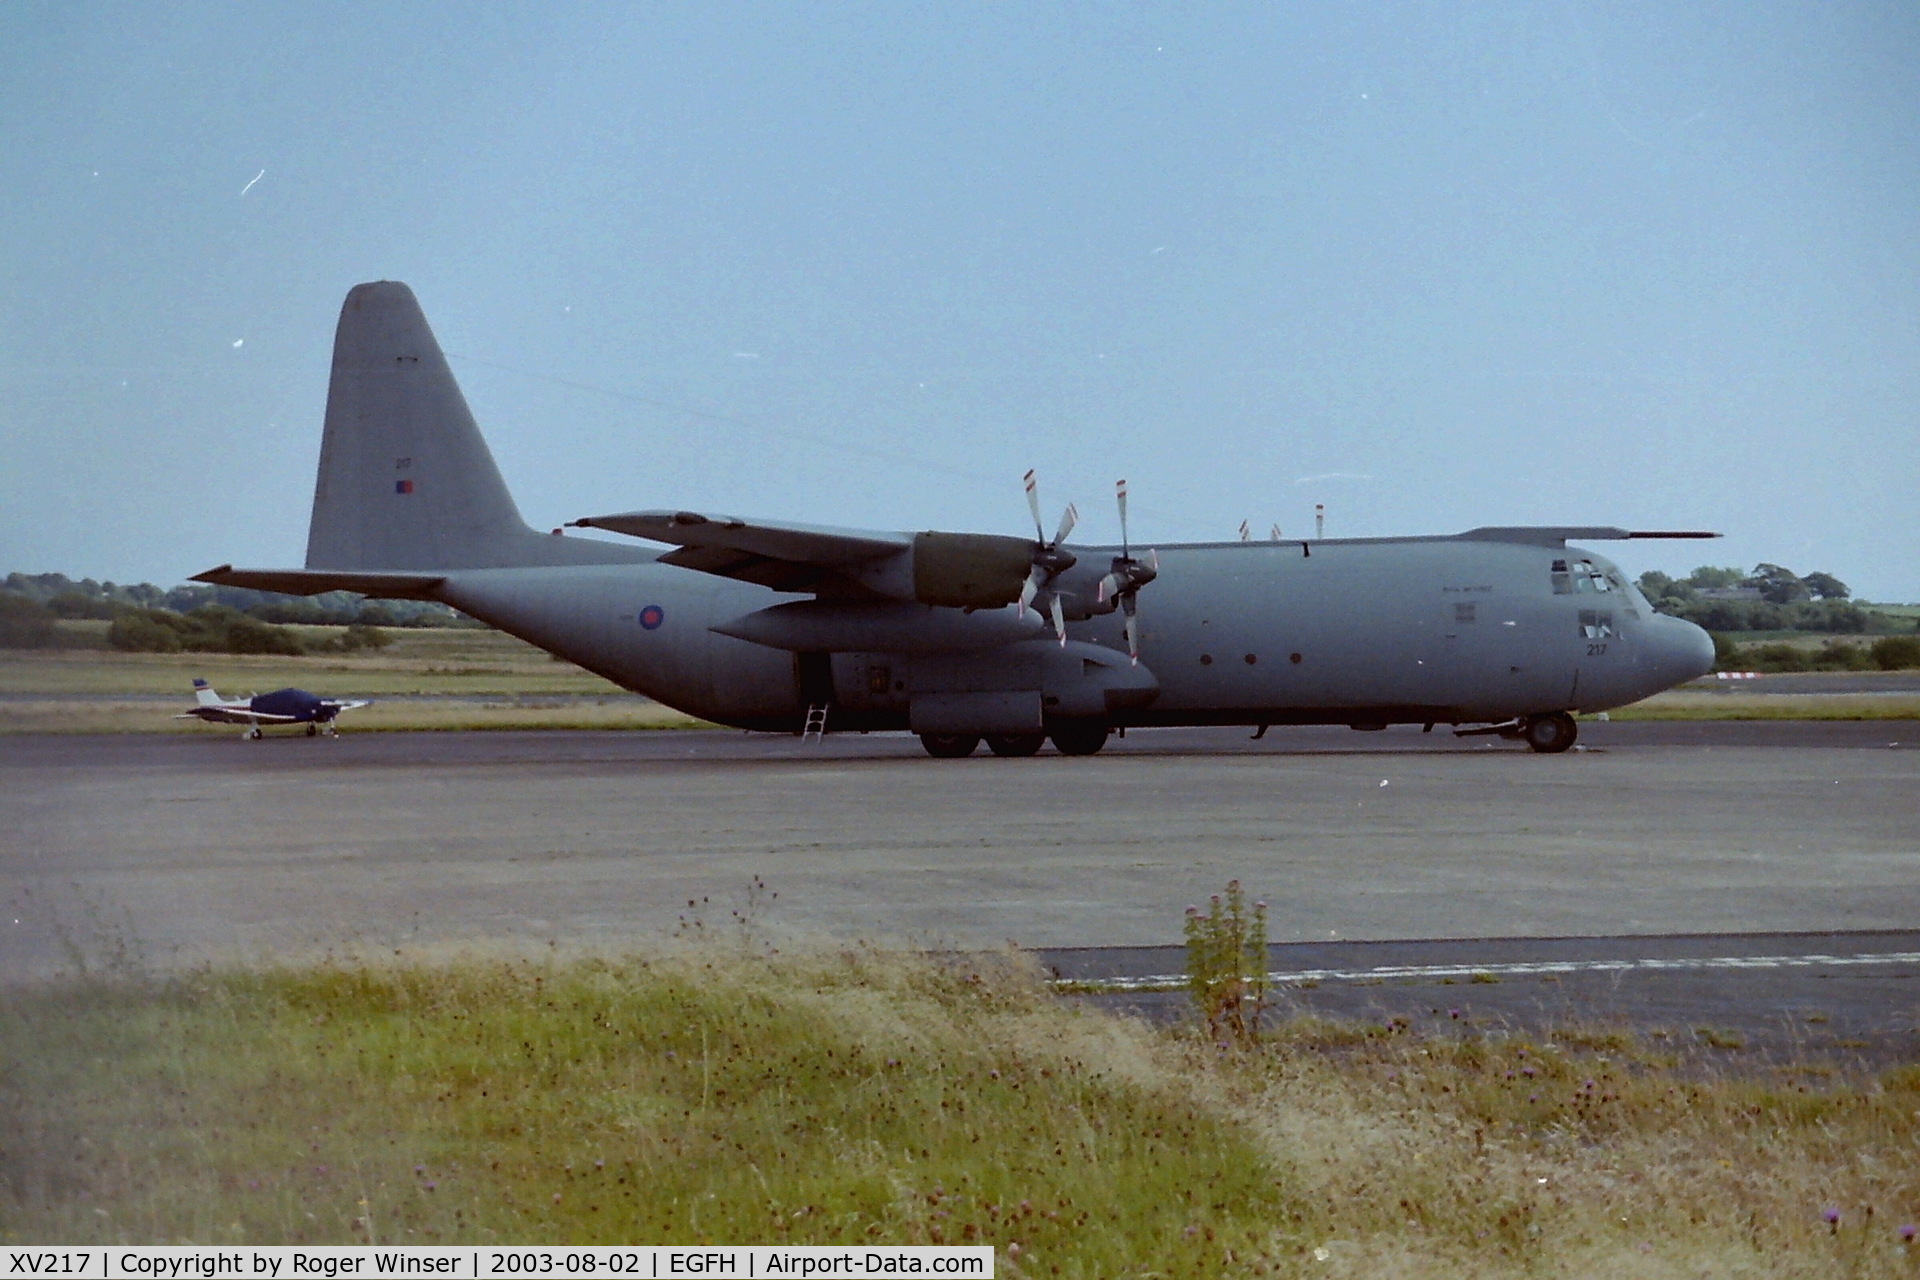 XV217, 1966 Lockheed C-130K Hercules C.3 C/N 382-4244, RAF Hercules C.1 lengthend to Hercules C.3 standards. Took Air Cadets on an air experience flight